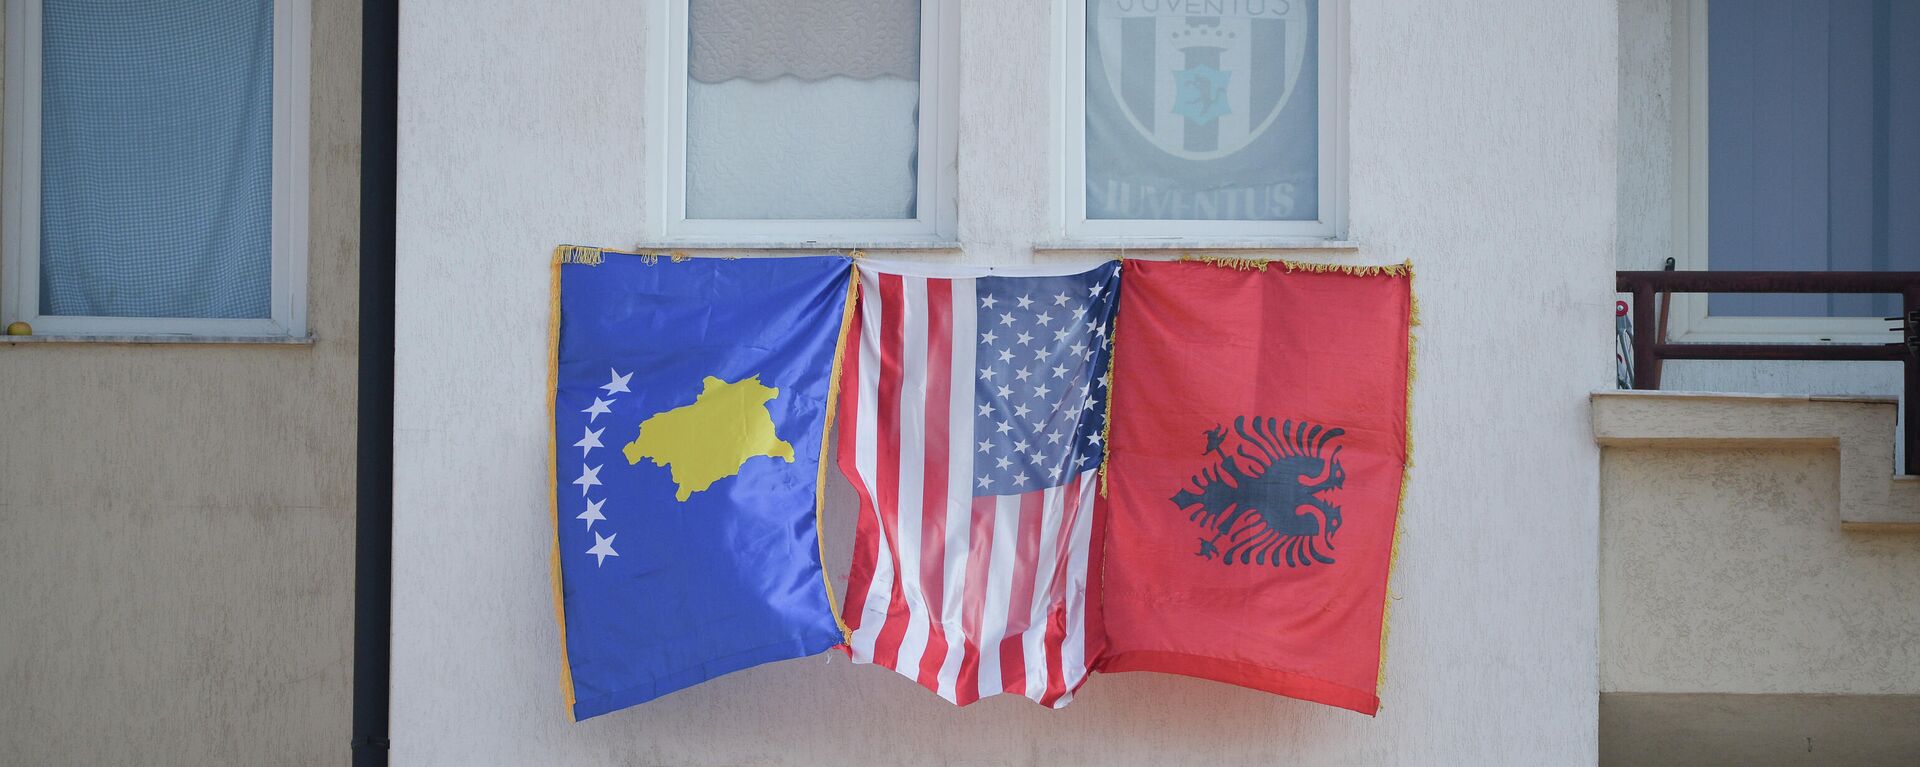 Zastave Albanije, Kosova i SAD - Sputnik Srbija, 1920, 12.05.2022